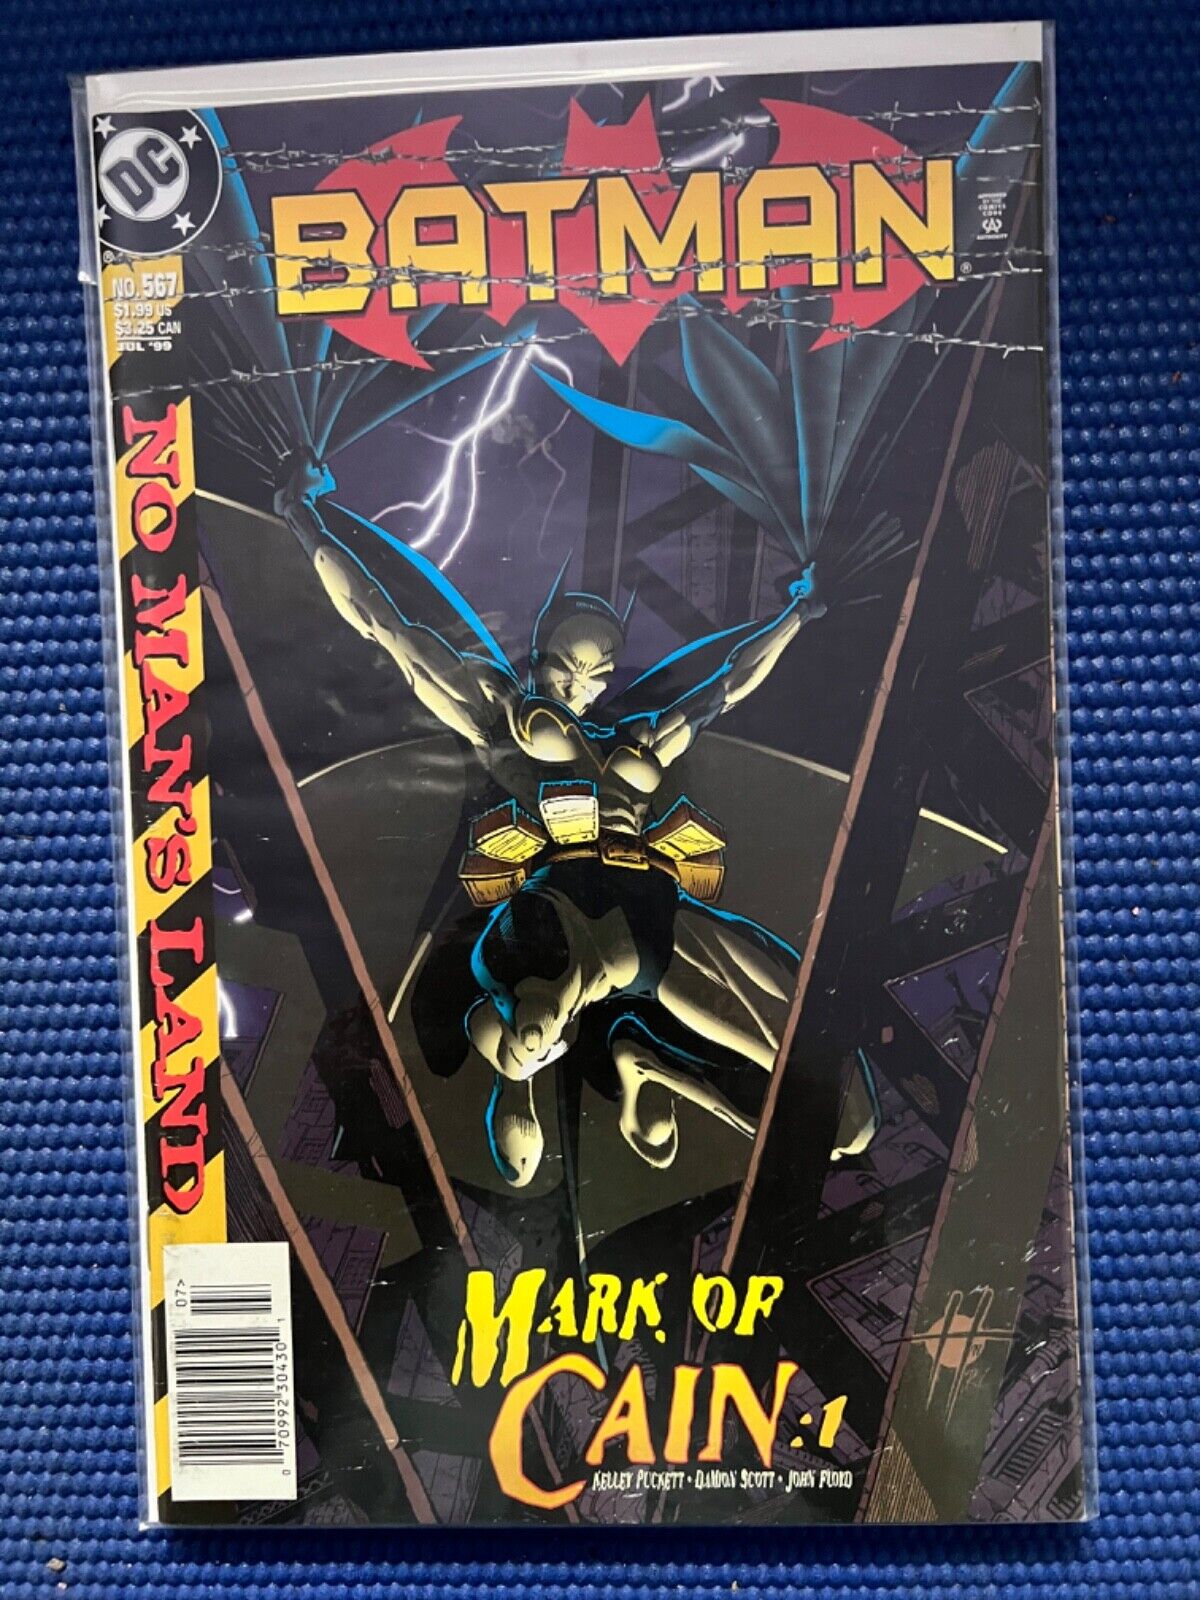 Batman #567 1st Appearance/Cover Cassandra Cain (Batgirl), Newsstand